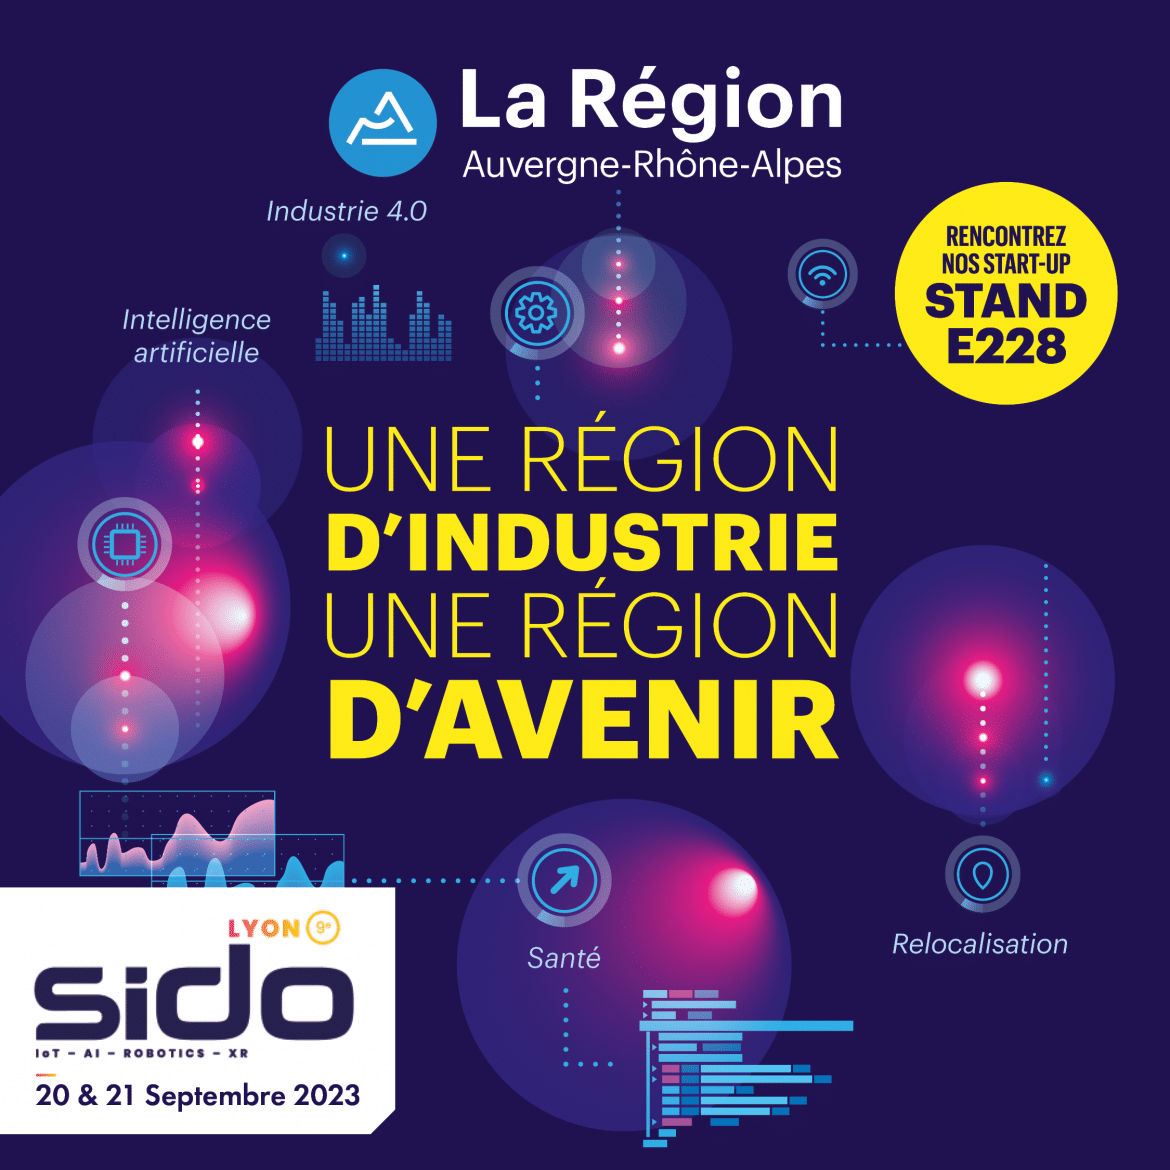 La SIDO tendrá lugar los días 20 y 21 de septiembre en Lyon.Effidence estará presente en el stand de la Región Auvergne-Rhône-Alpes.